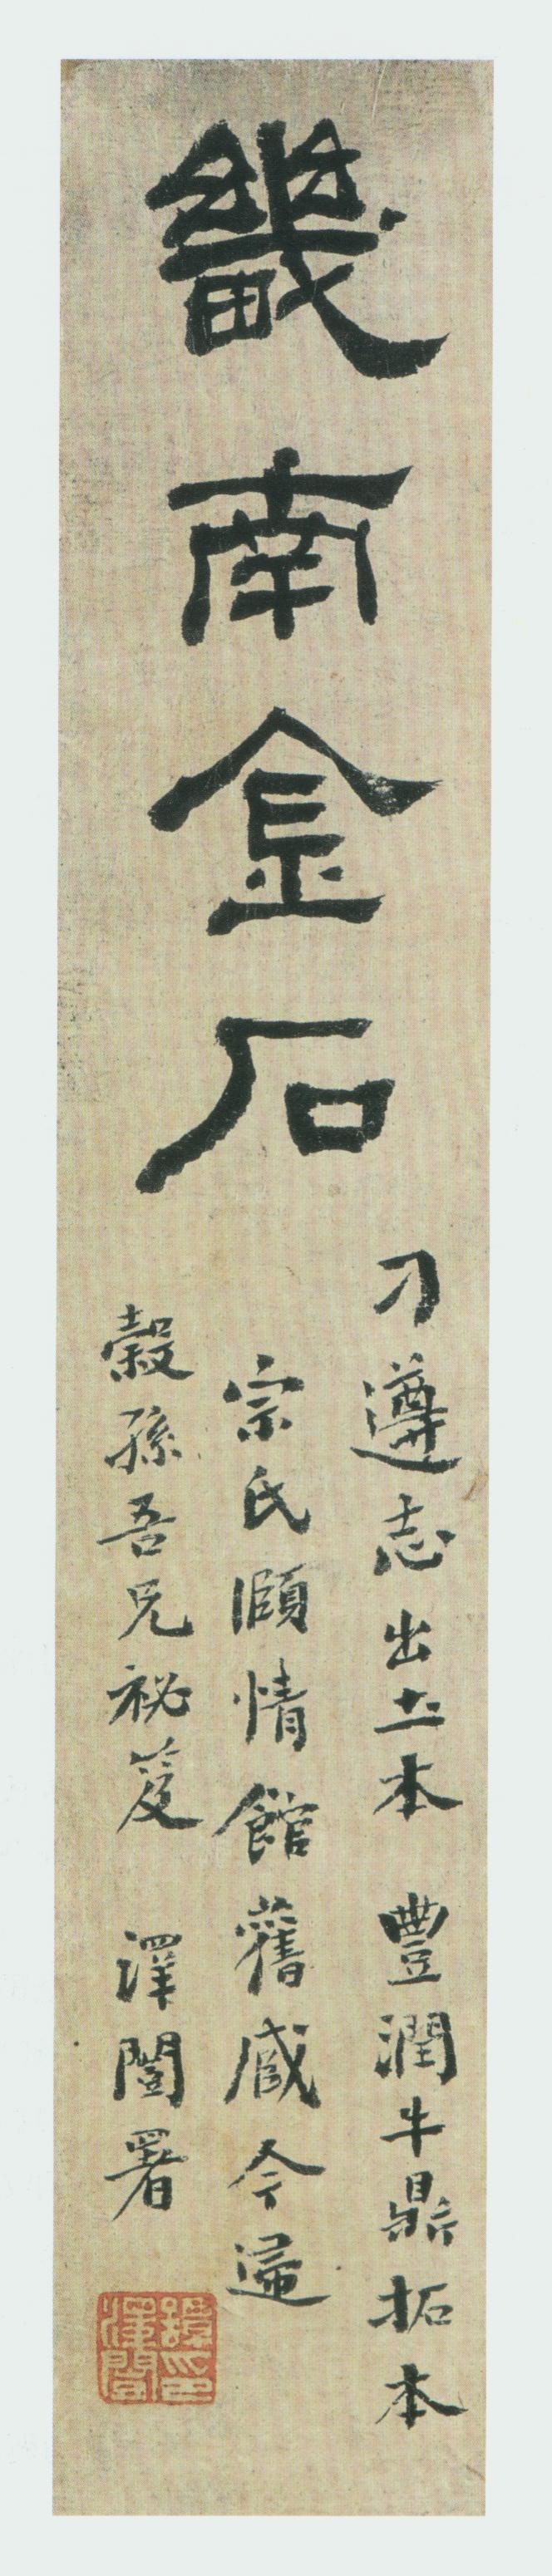 北魏《刁遵墓志》题签与题跋(图1)